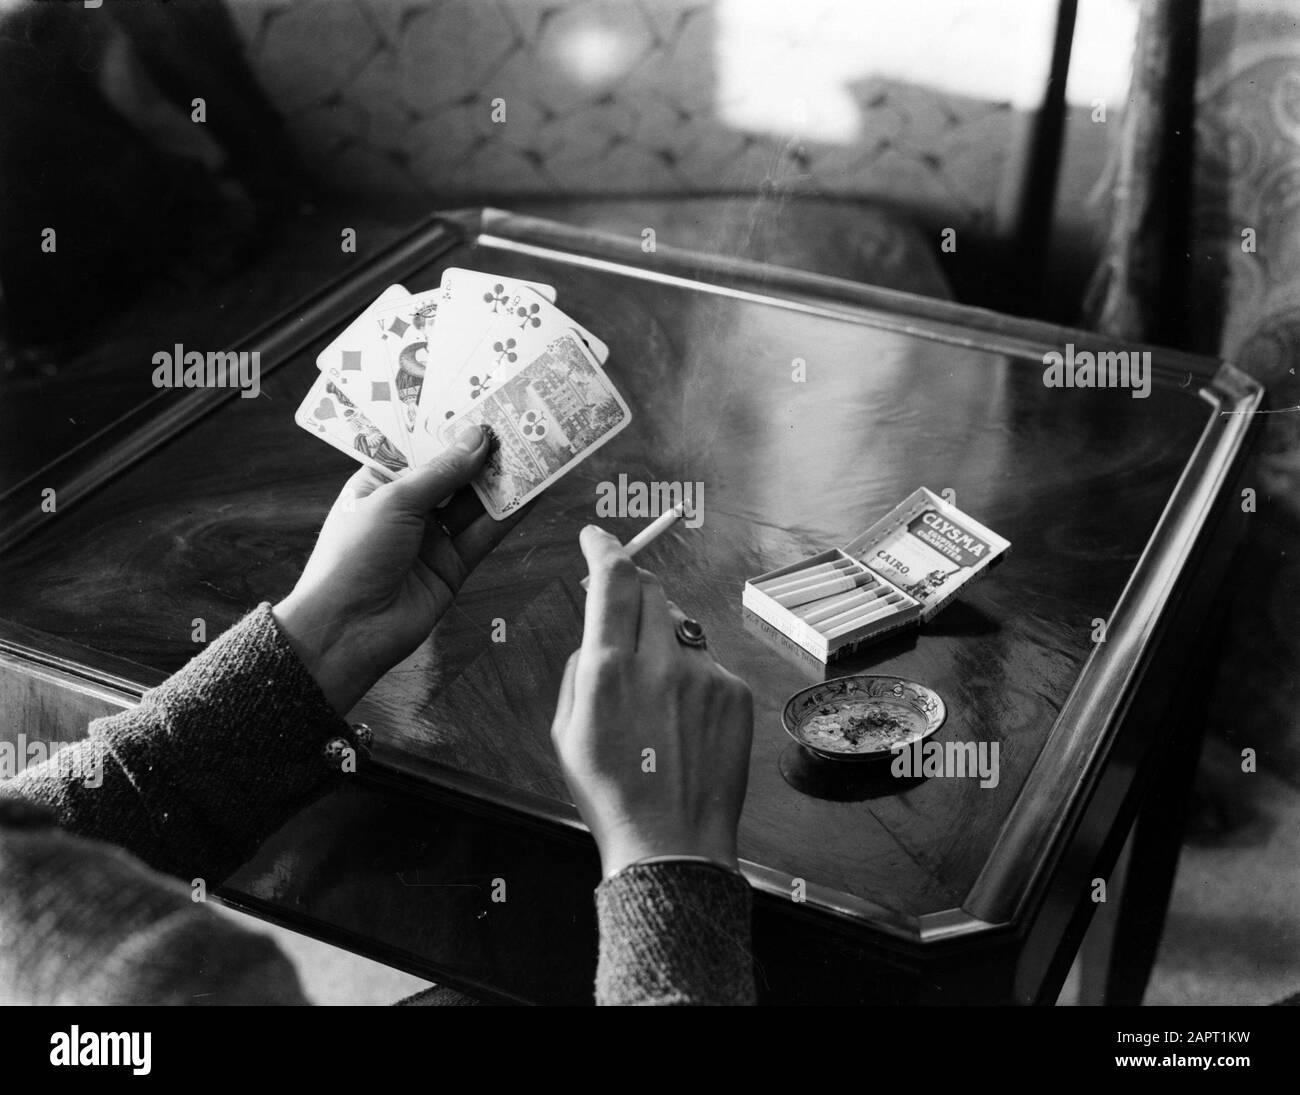 Pubblicità Fotografia UNA donna che gioca carta e fuma una sigaretta Data: Parole Chiave dense: Giochi di carte, sigarette Foto Stock